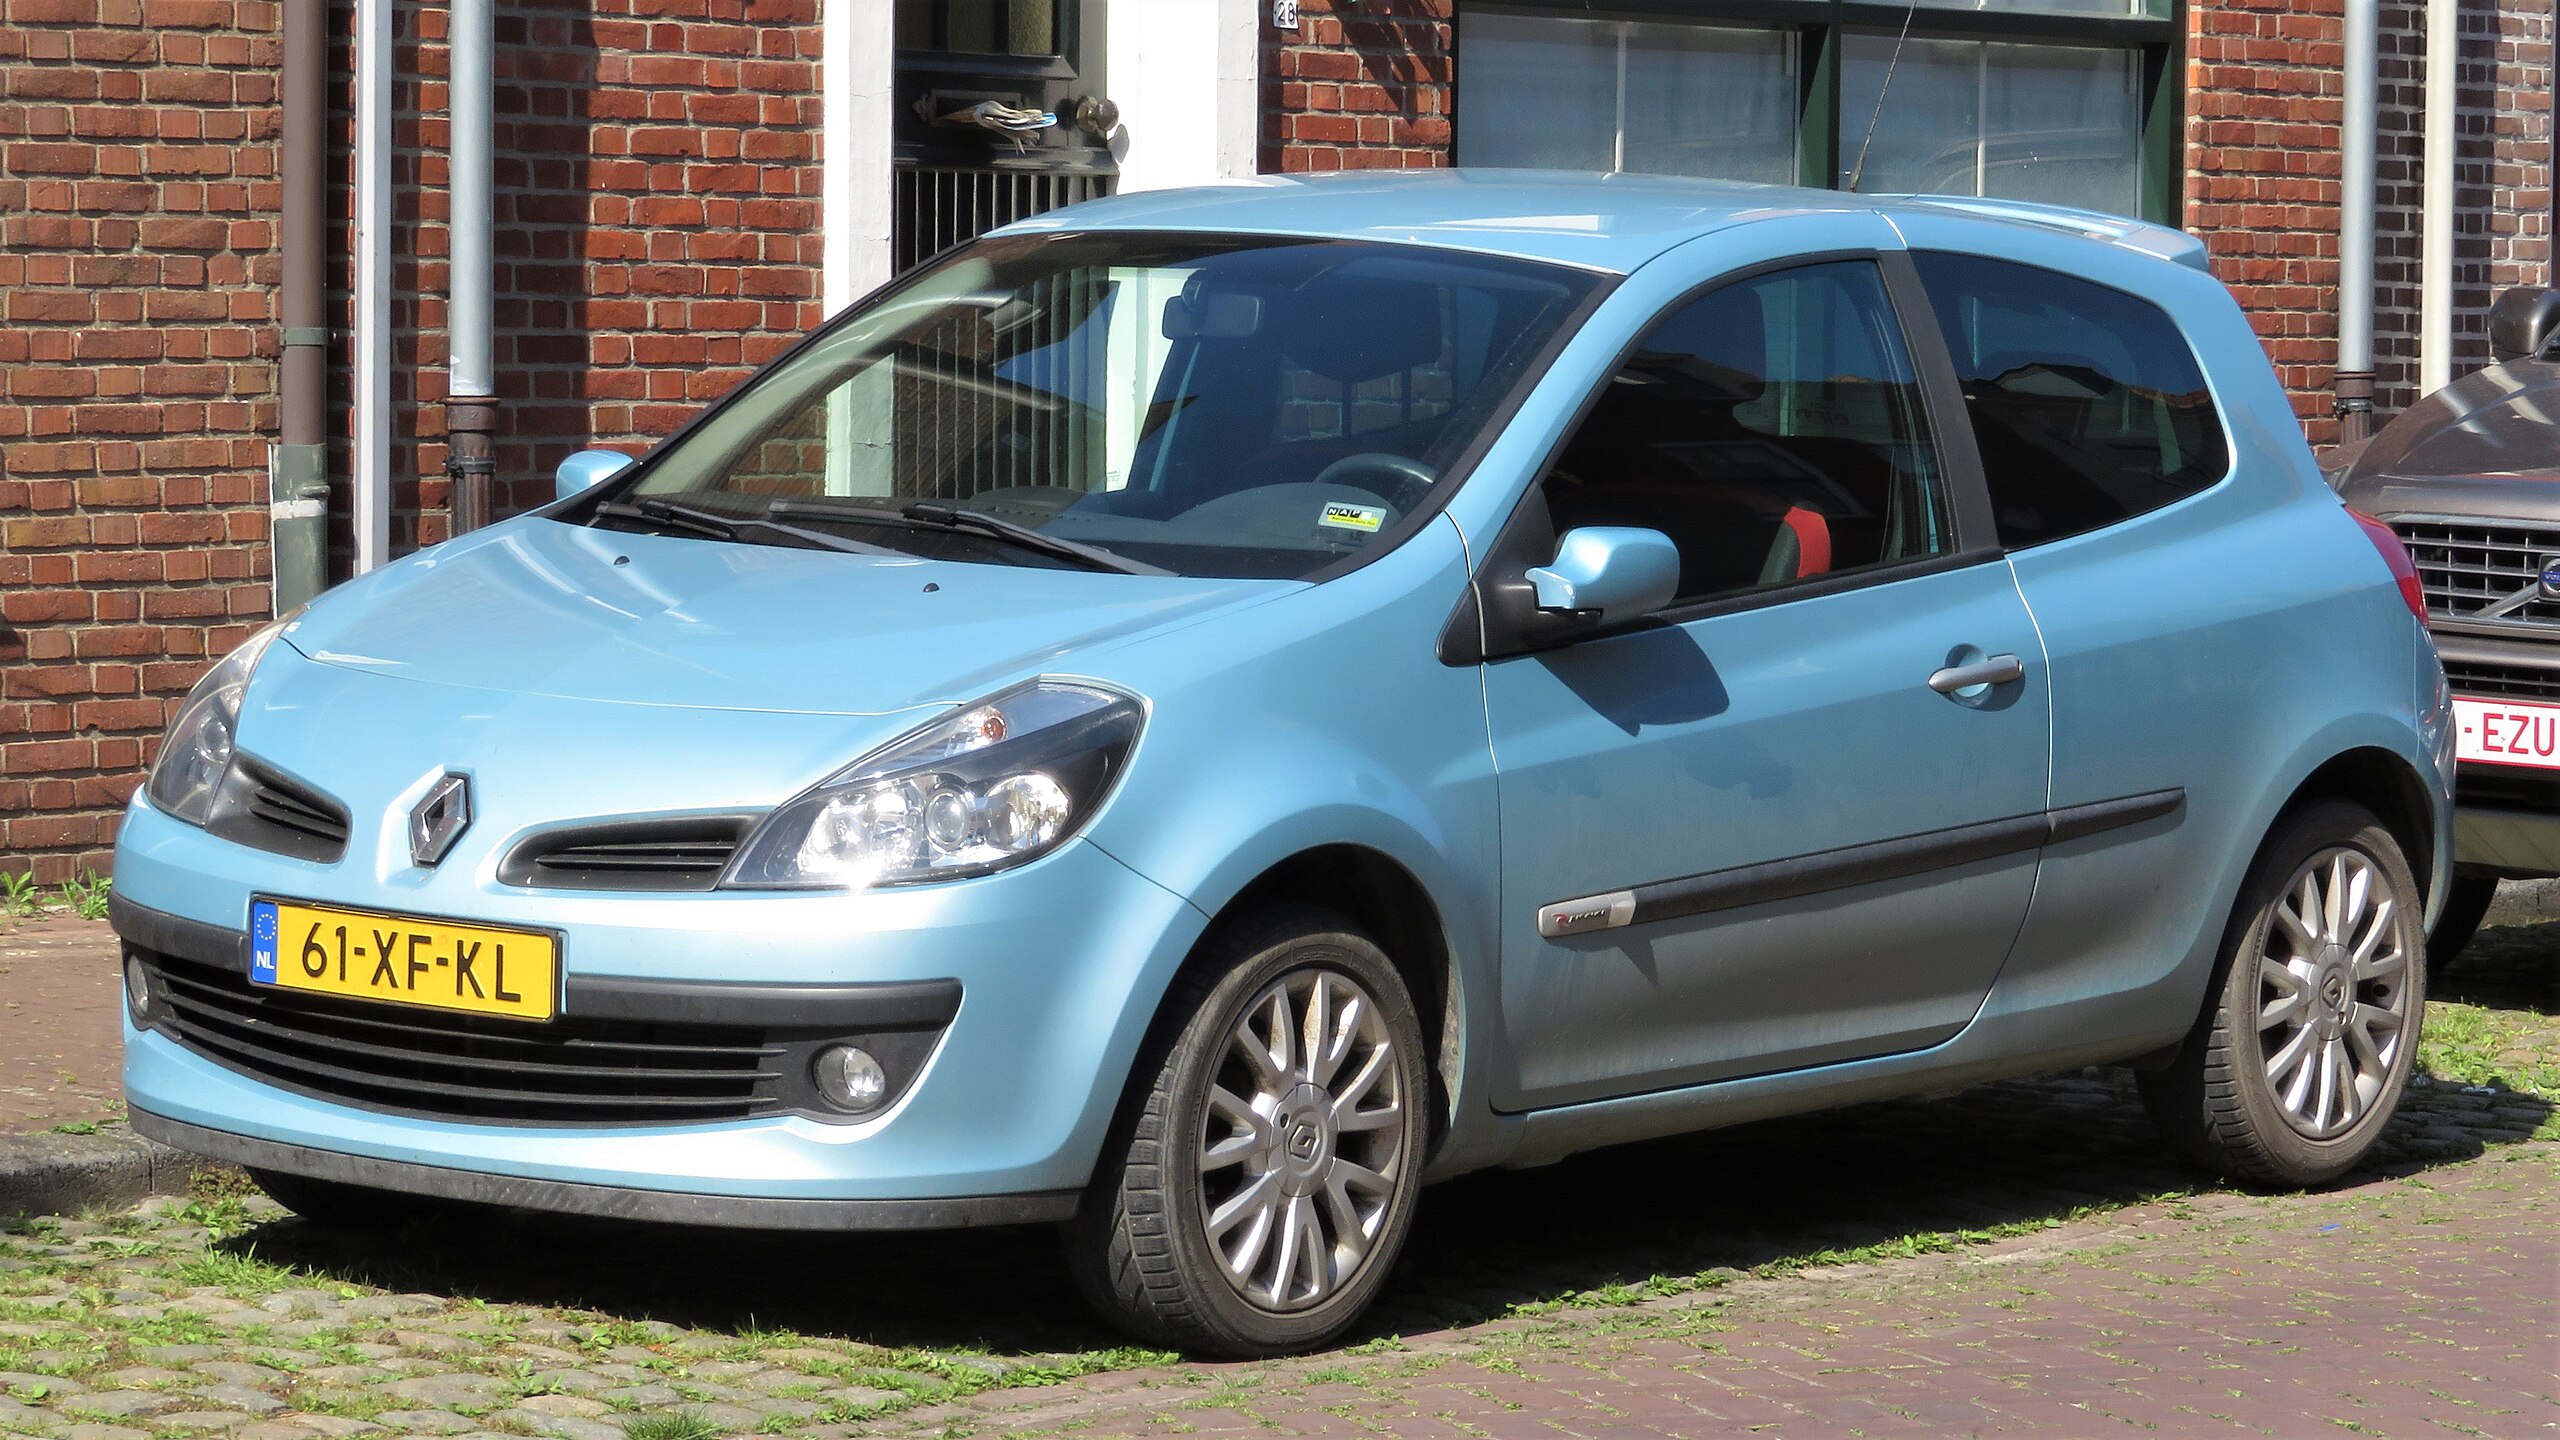 https://upload.wikimedia.org/wikipedia/commons/thumb/2/2c/Renault_Clio_III_2-door_in_Aardenburg.jpg/2560px-Renault_Clio_III_2-door_in_Aardenburg.jpg